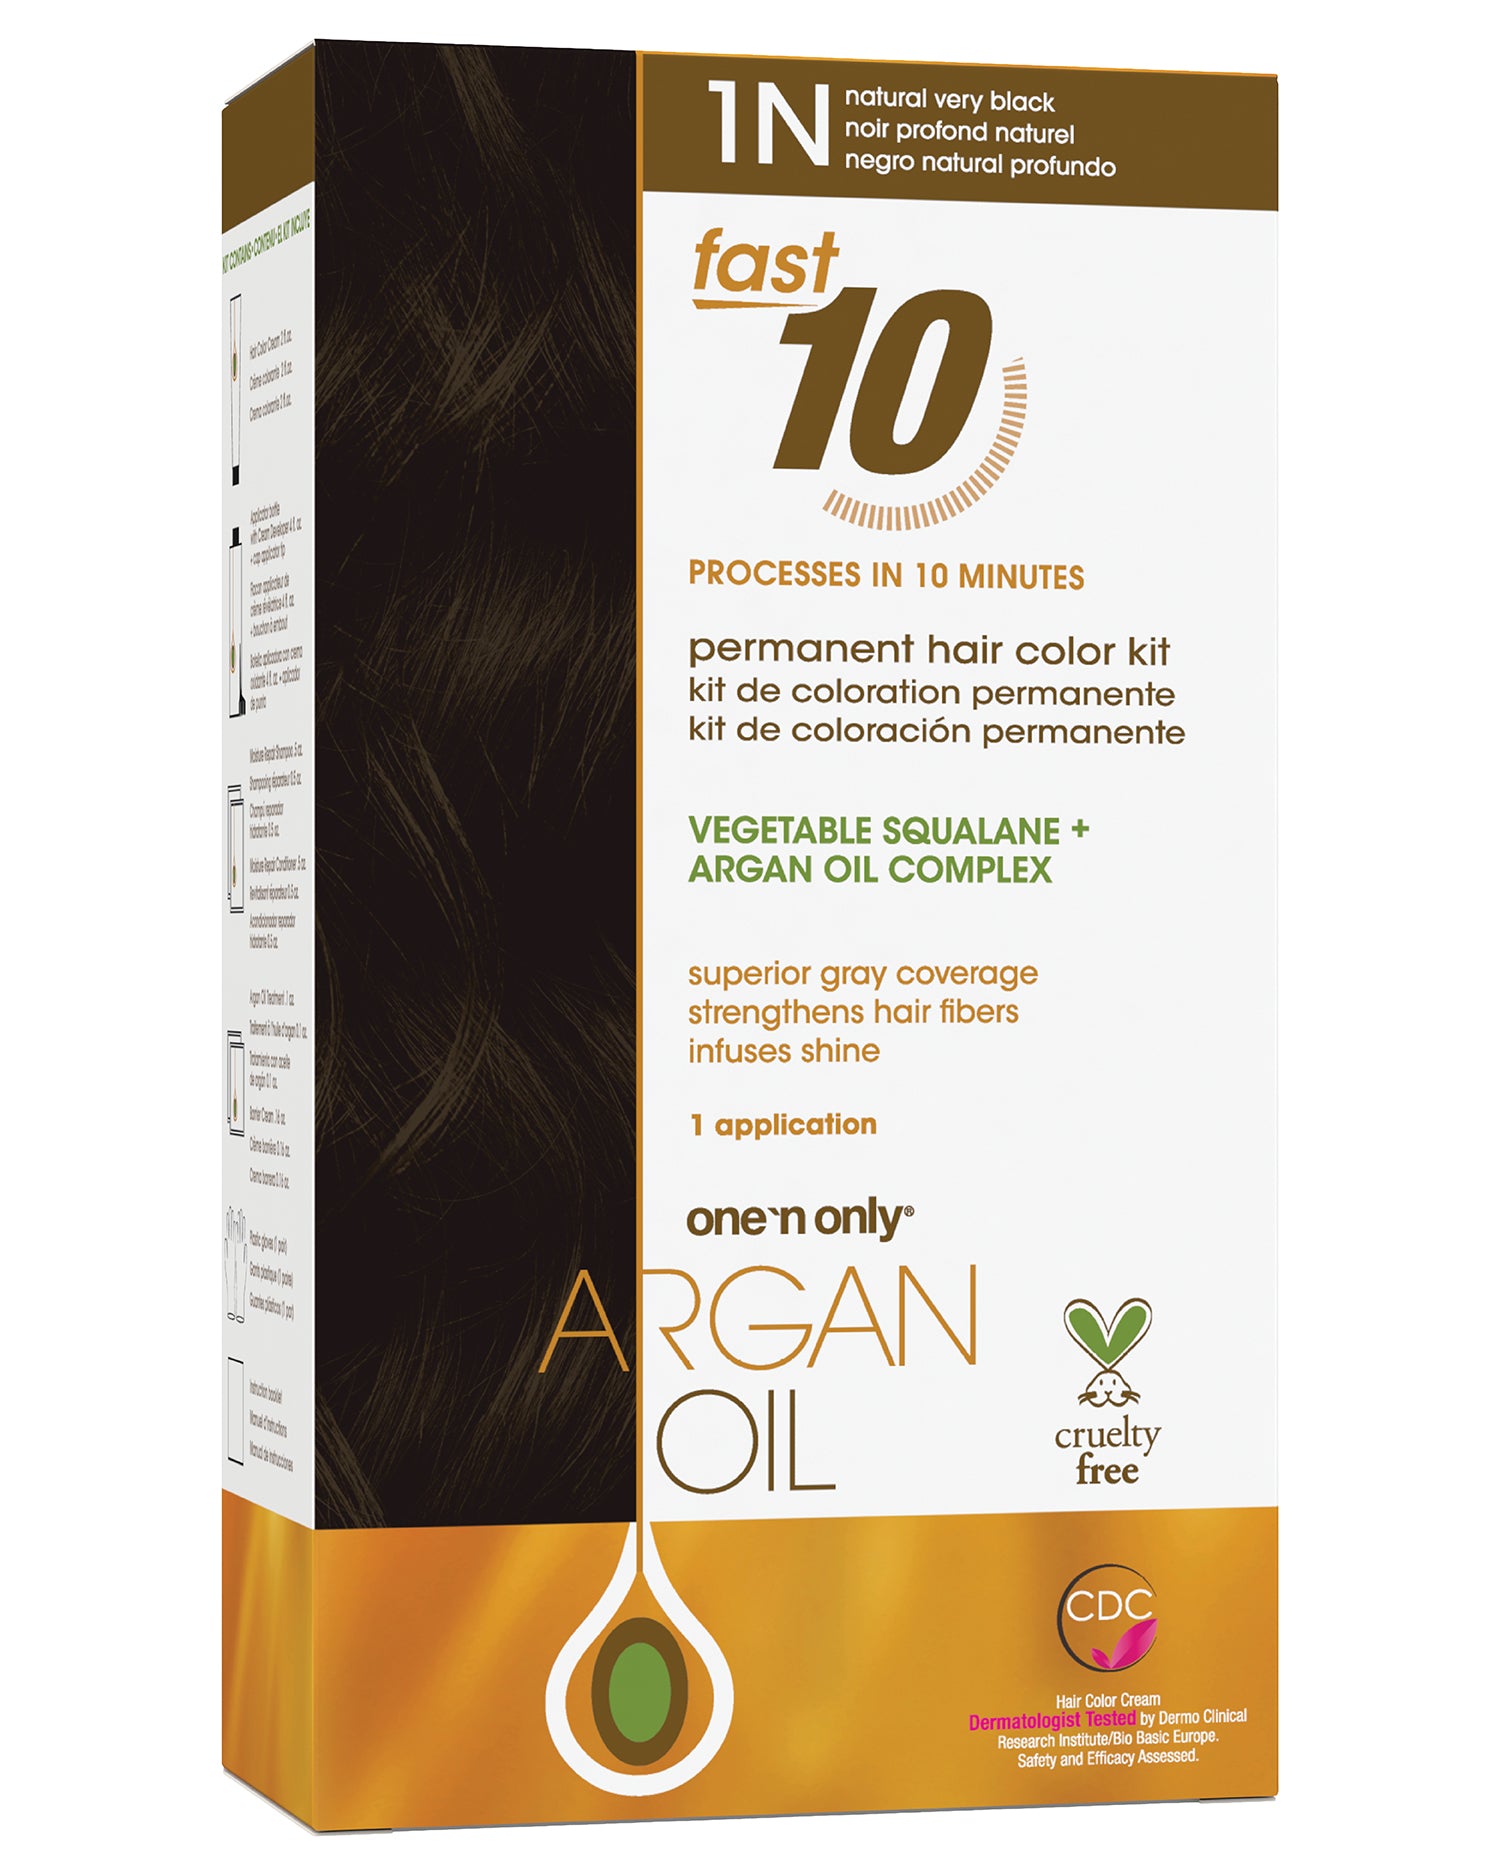 Argan Oil Fast 10 Permanent Hair Color Kit 1N?Natural Very Black